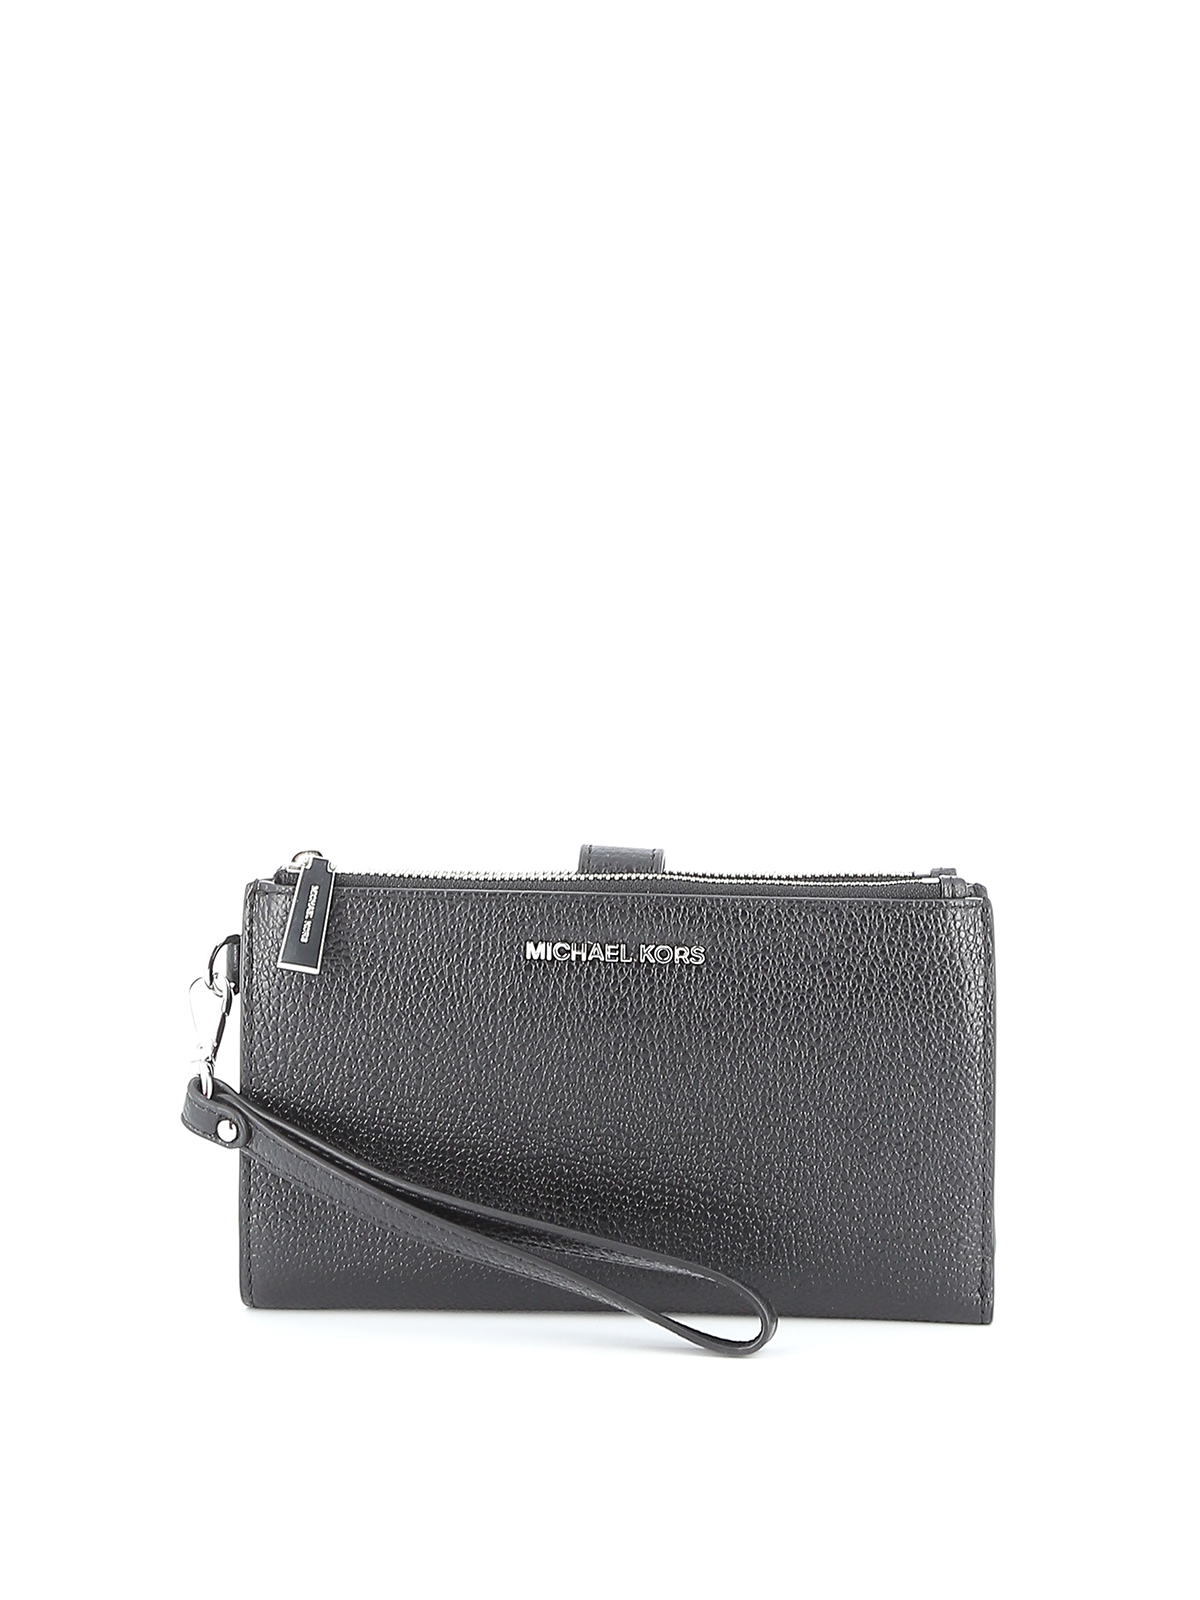 Wallets & purses Michael Kors - Jet Set black leather double zip wallet -  34F9SAFW4L001